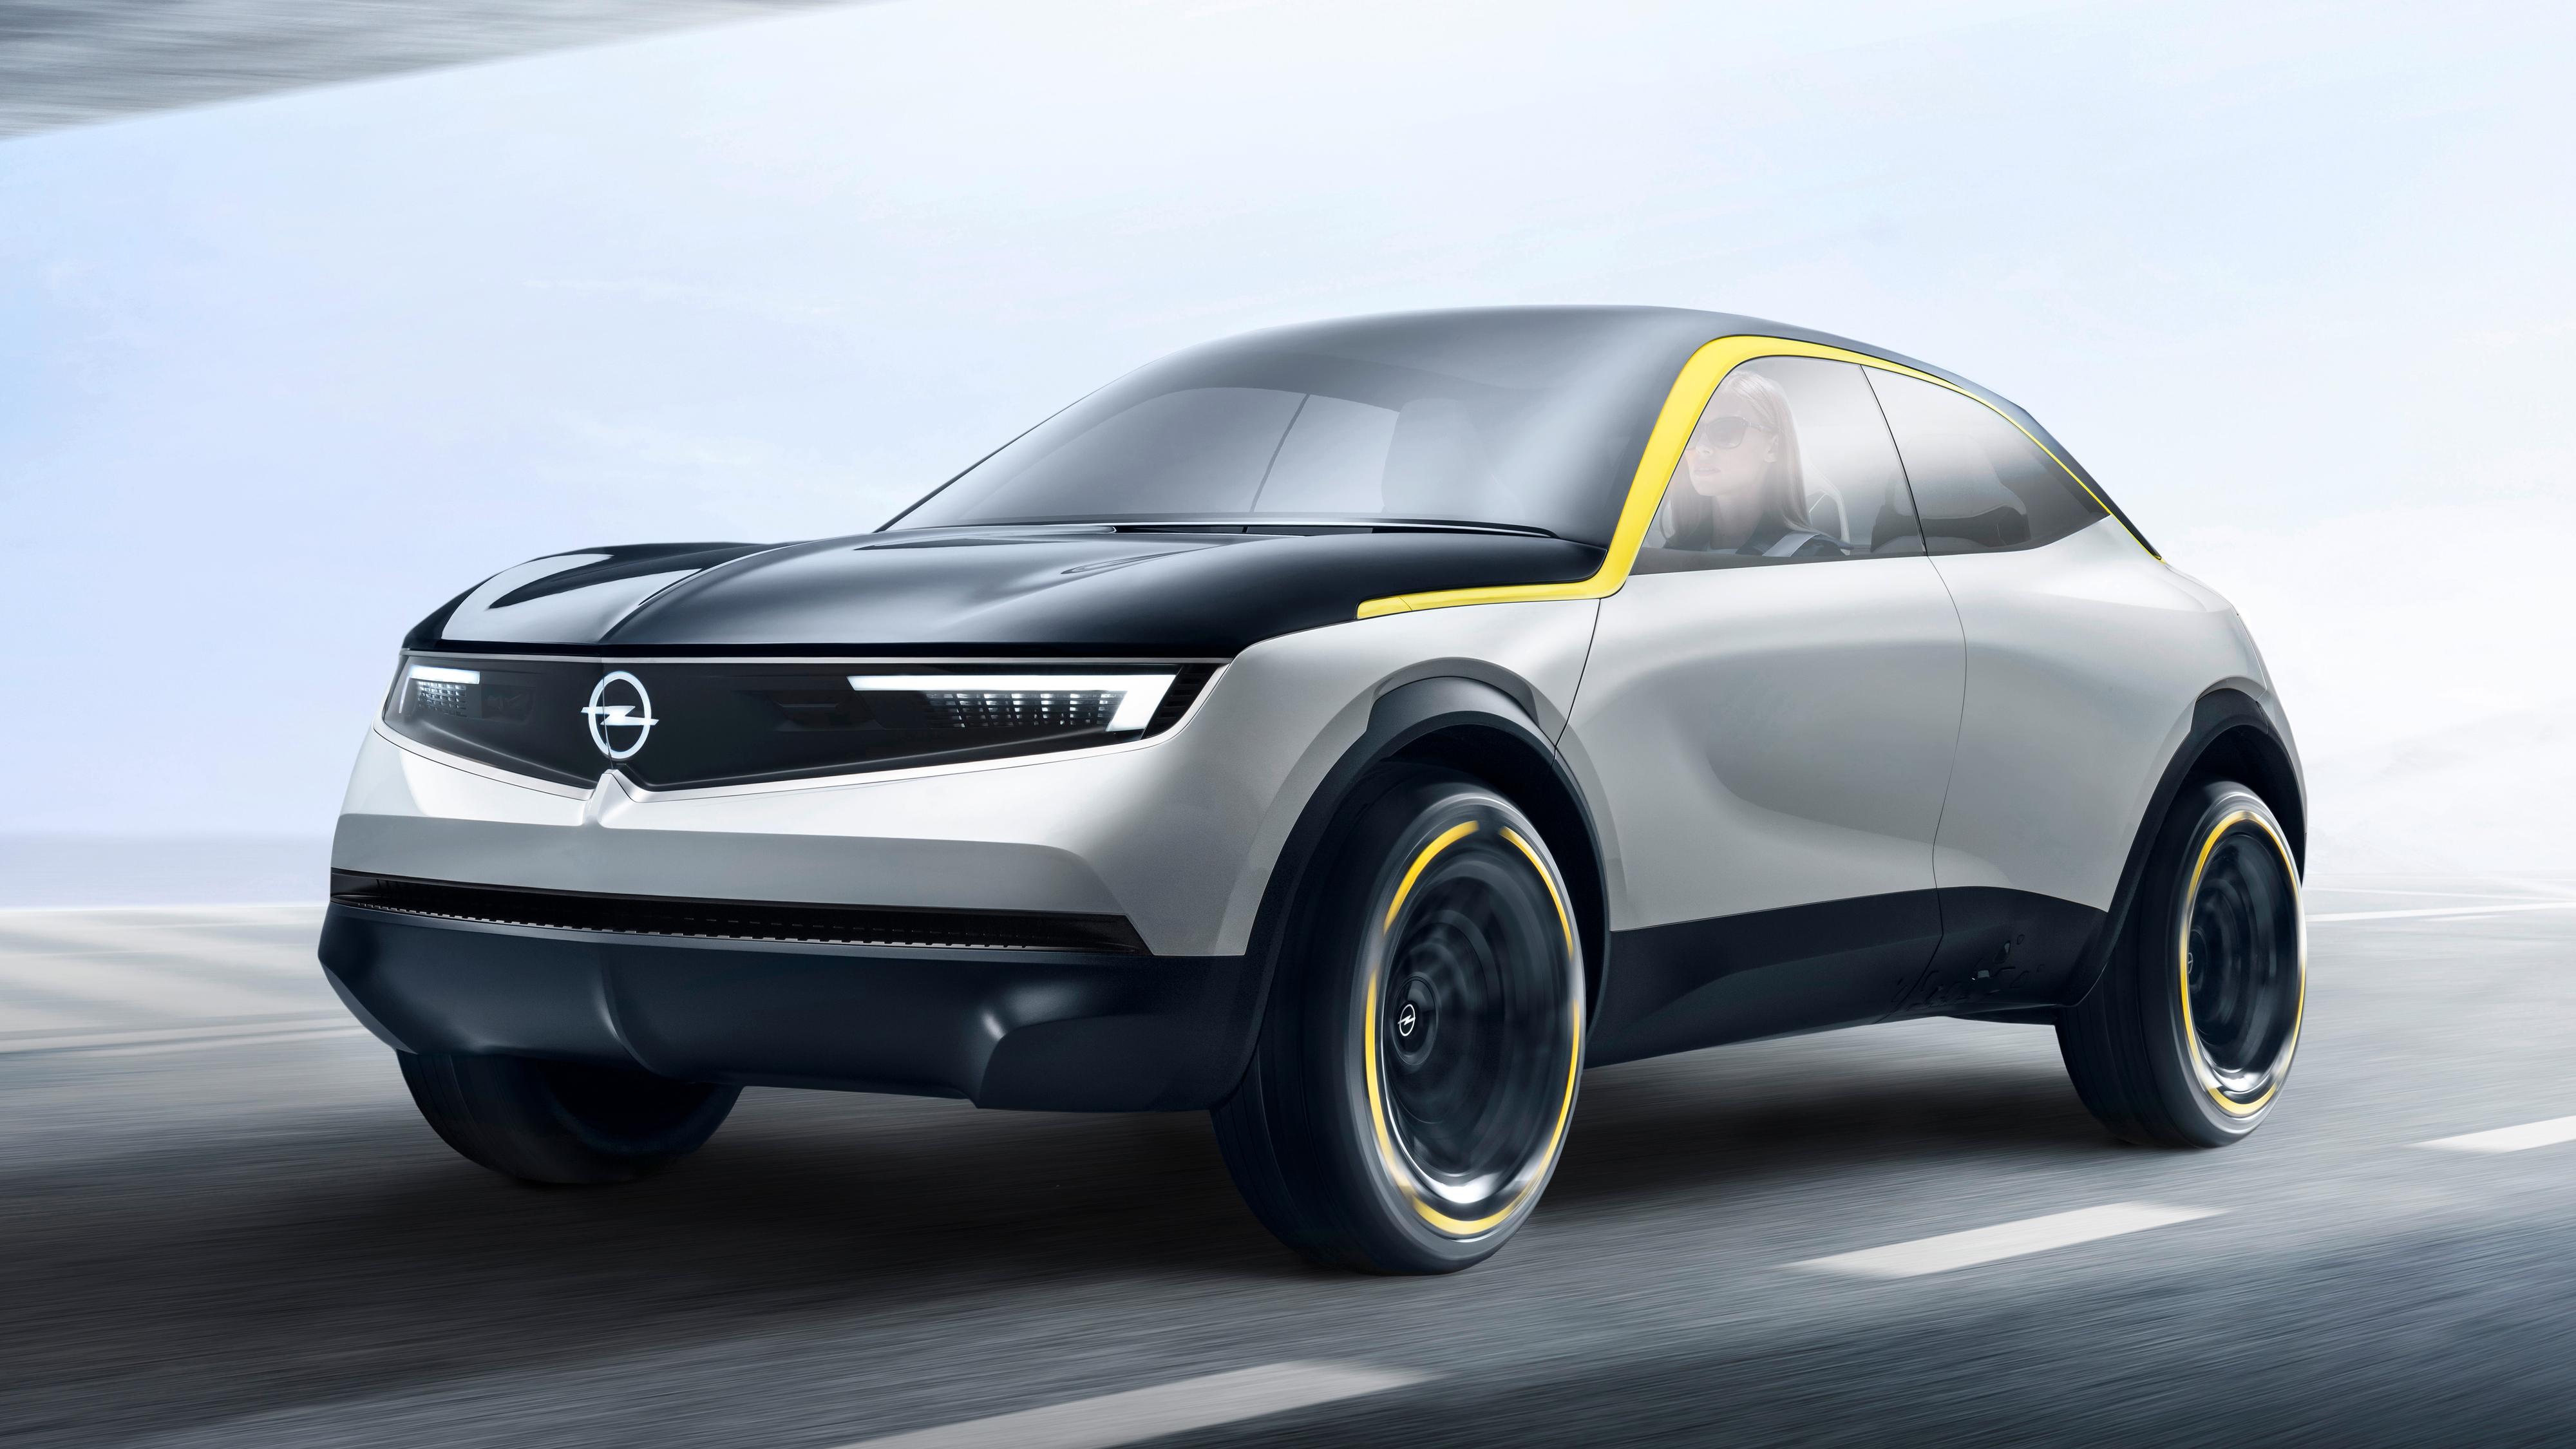 Opel satser på el-SUV: Her er deres nye konsept